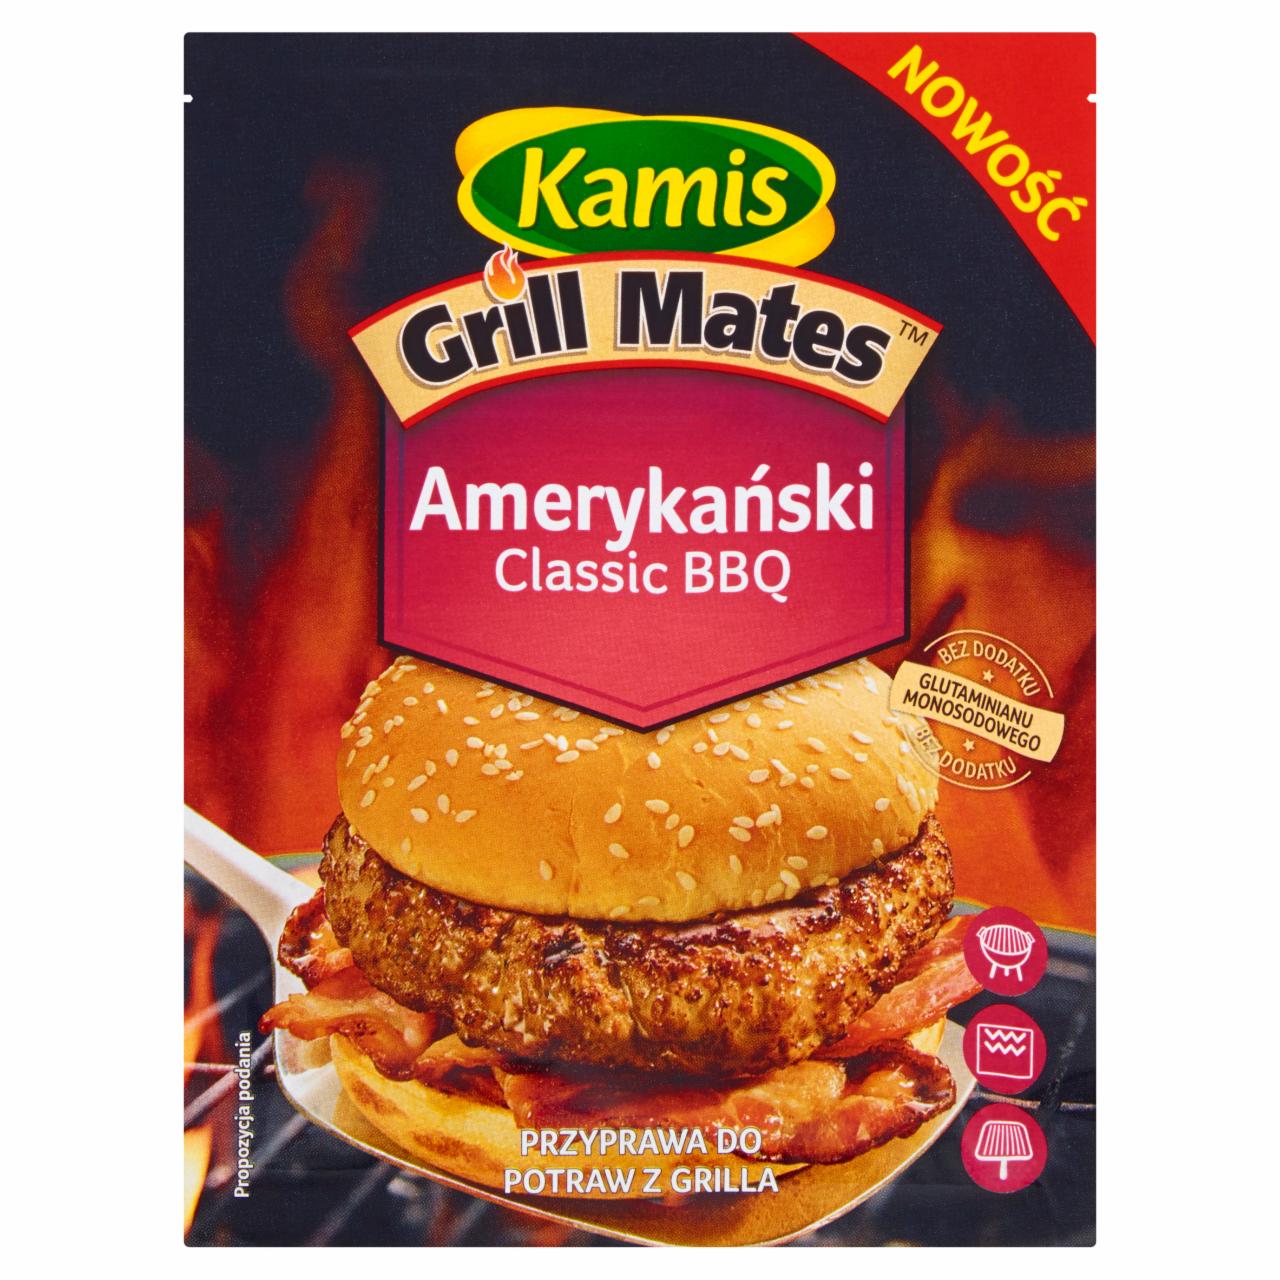 Zdjęcia - Kamis Grill Mates Amerykański Classic BBQ Przyprawa do potraw z grilla 20 g